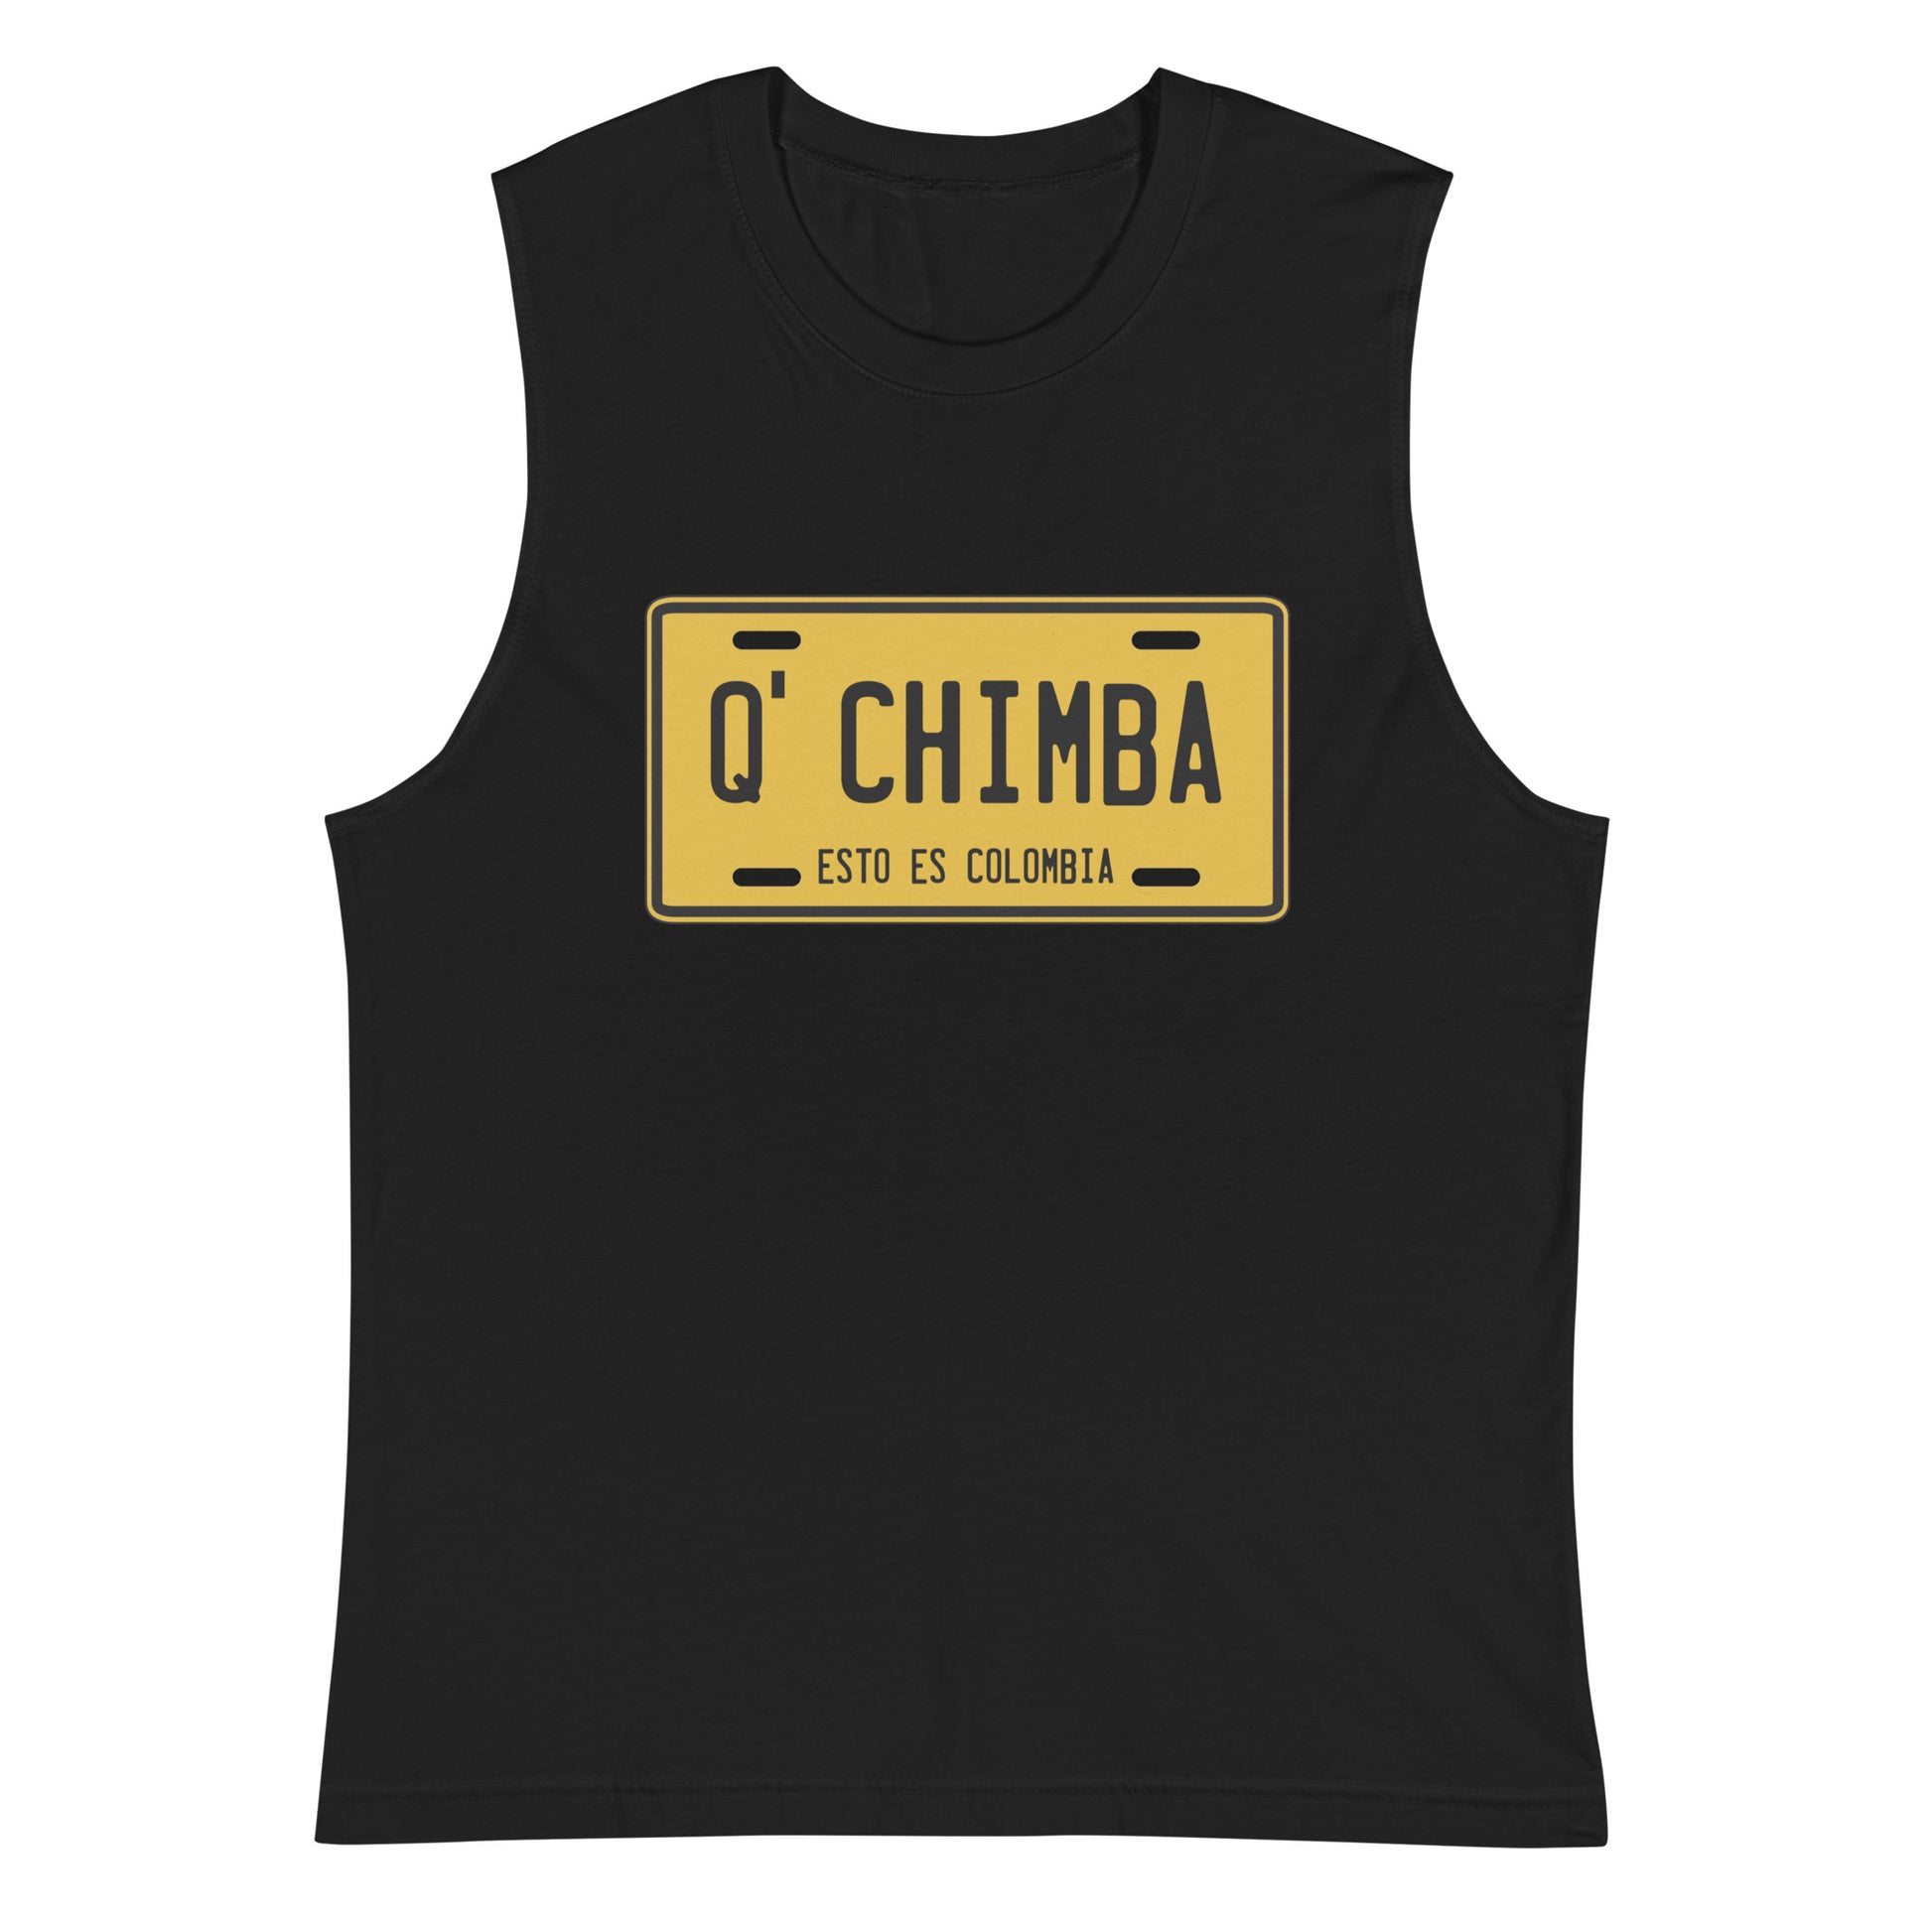 Camiseta sin mangas Q' Chimba: el emblema de orgullo colombiano con calidad excepcional y estampado que resiste el paso del tiempo.